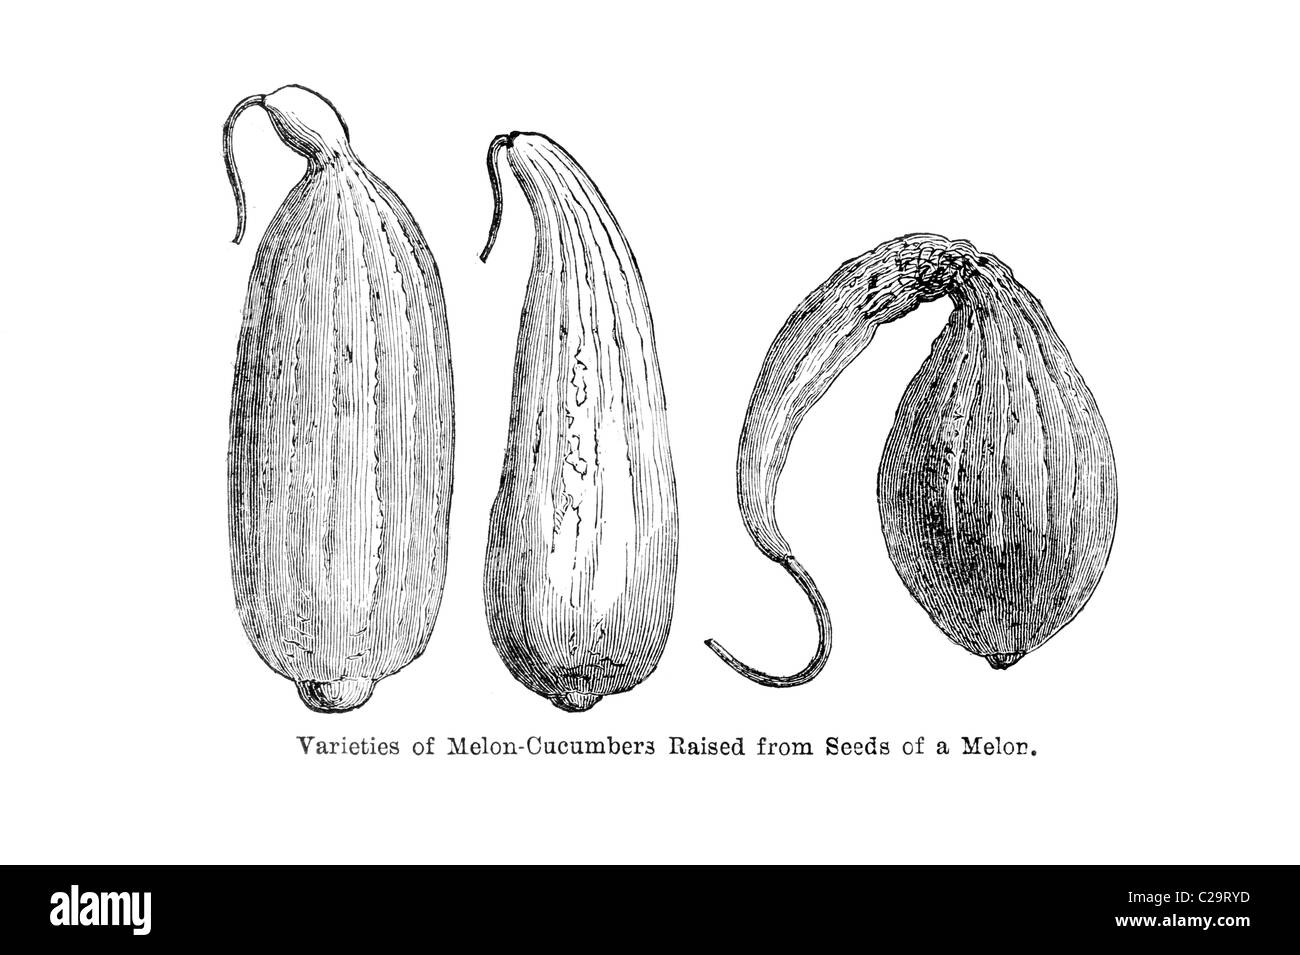 Variétés de concombres Melon soulevées à partir des graines de melon, une illustration du xixe siècle Banque D'Images